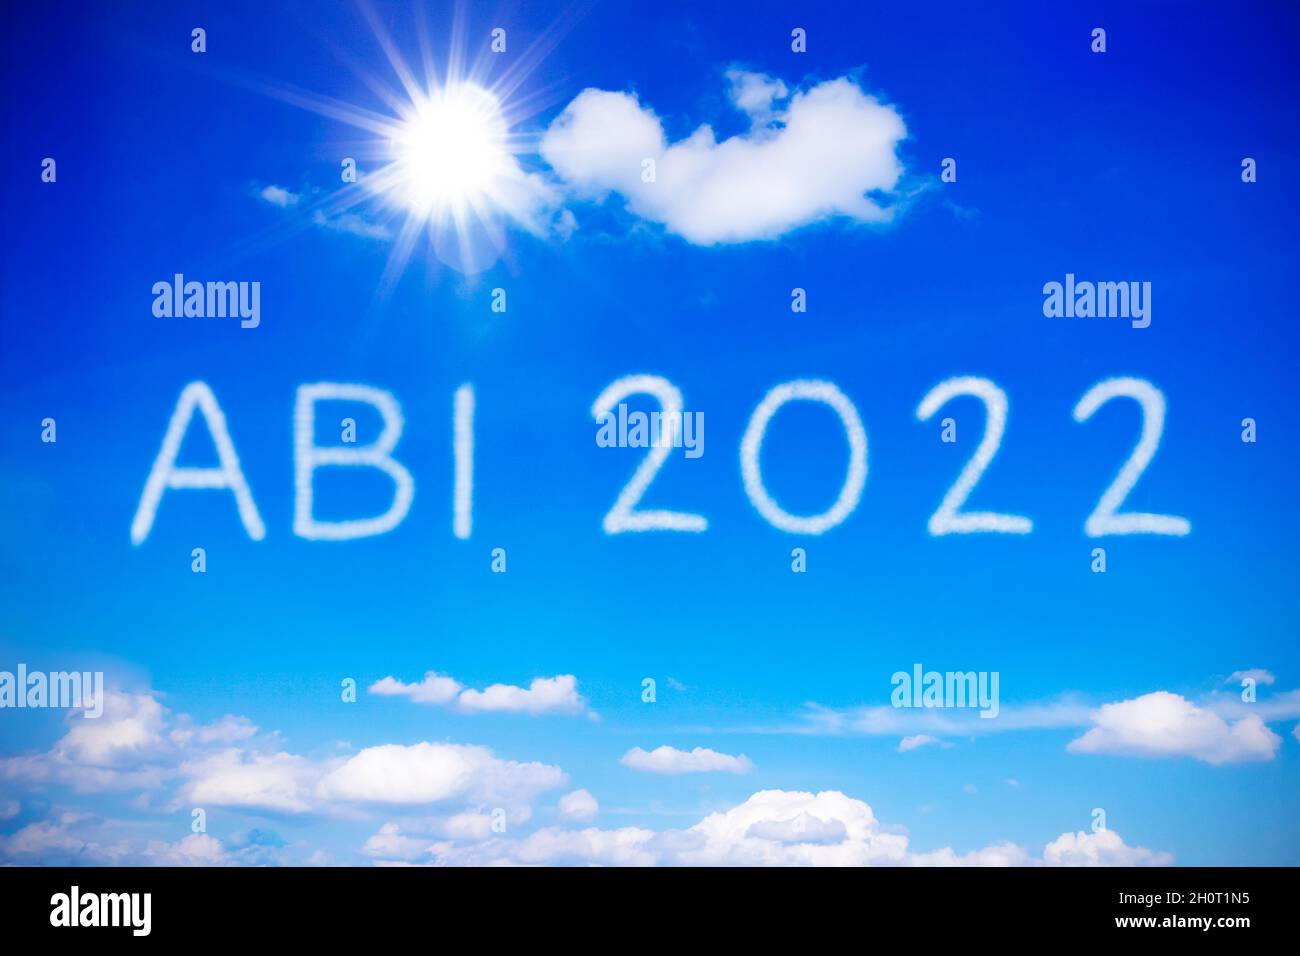 ABI 2022 écrit sur ciel bleu ensoleillé, traduction: Diplôme de lycée allemand ou A niveaux, concept de réalisation, gratuit enfin. Banque D'Images